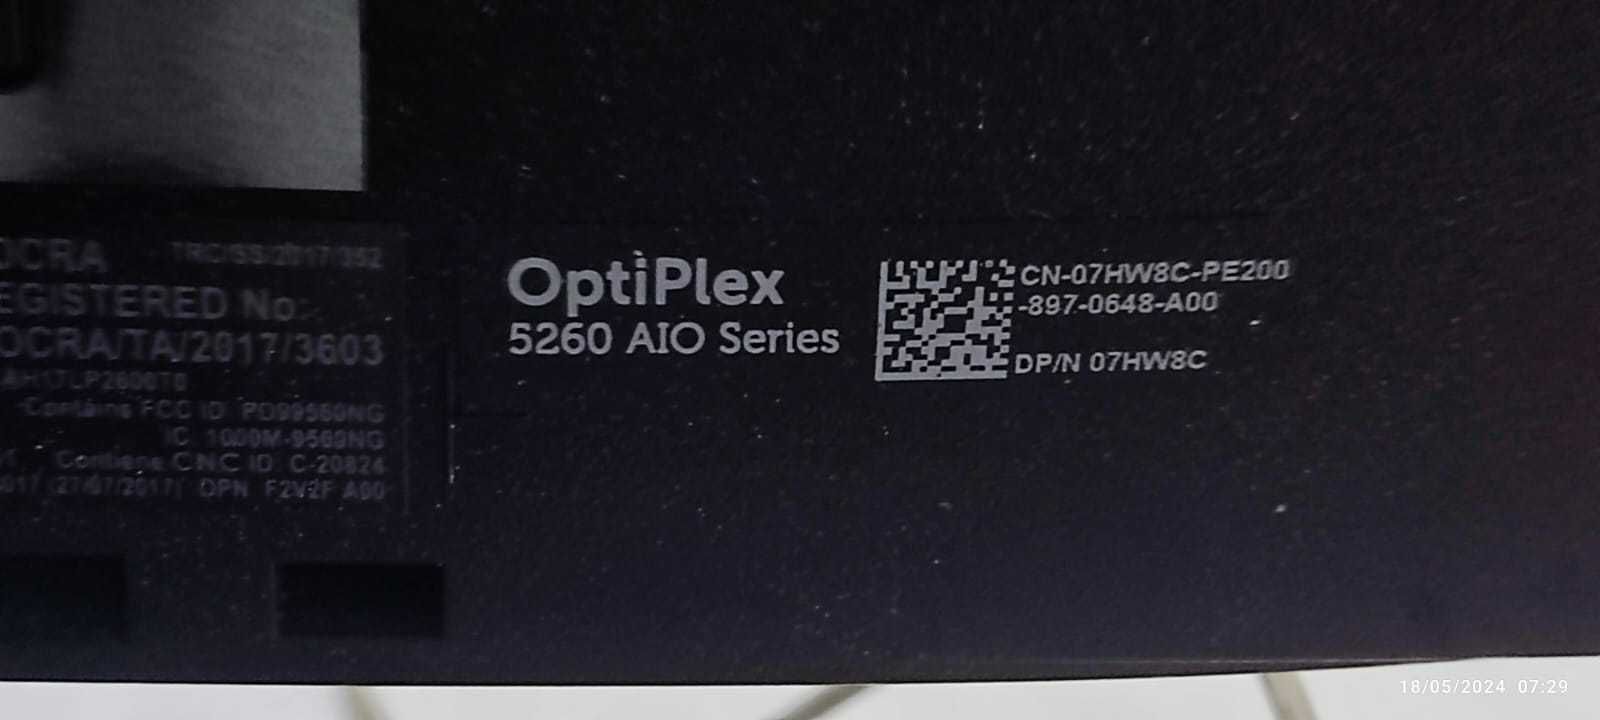 DELL Optiplex 5260 AIO